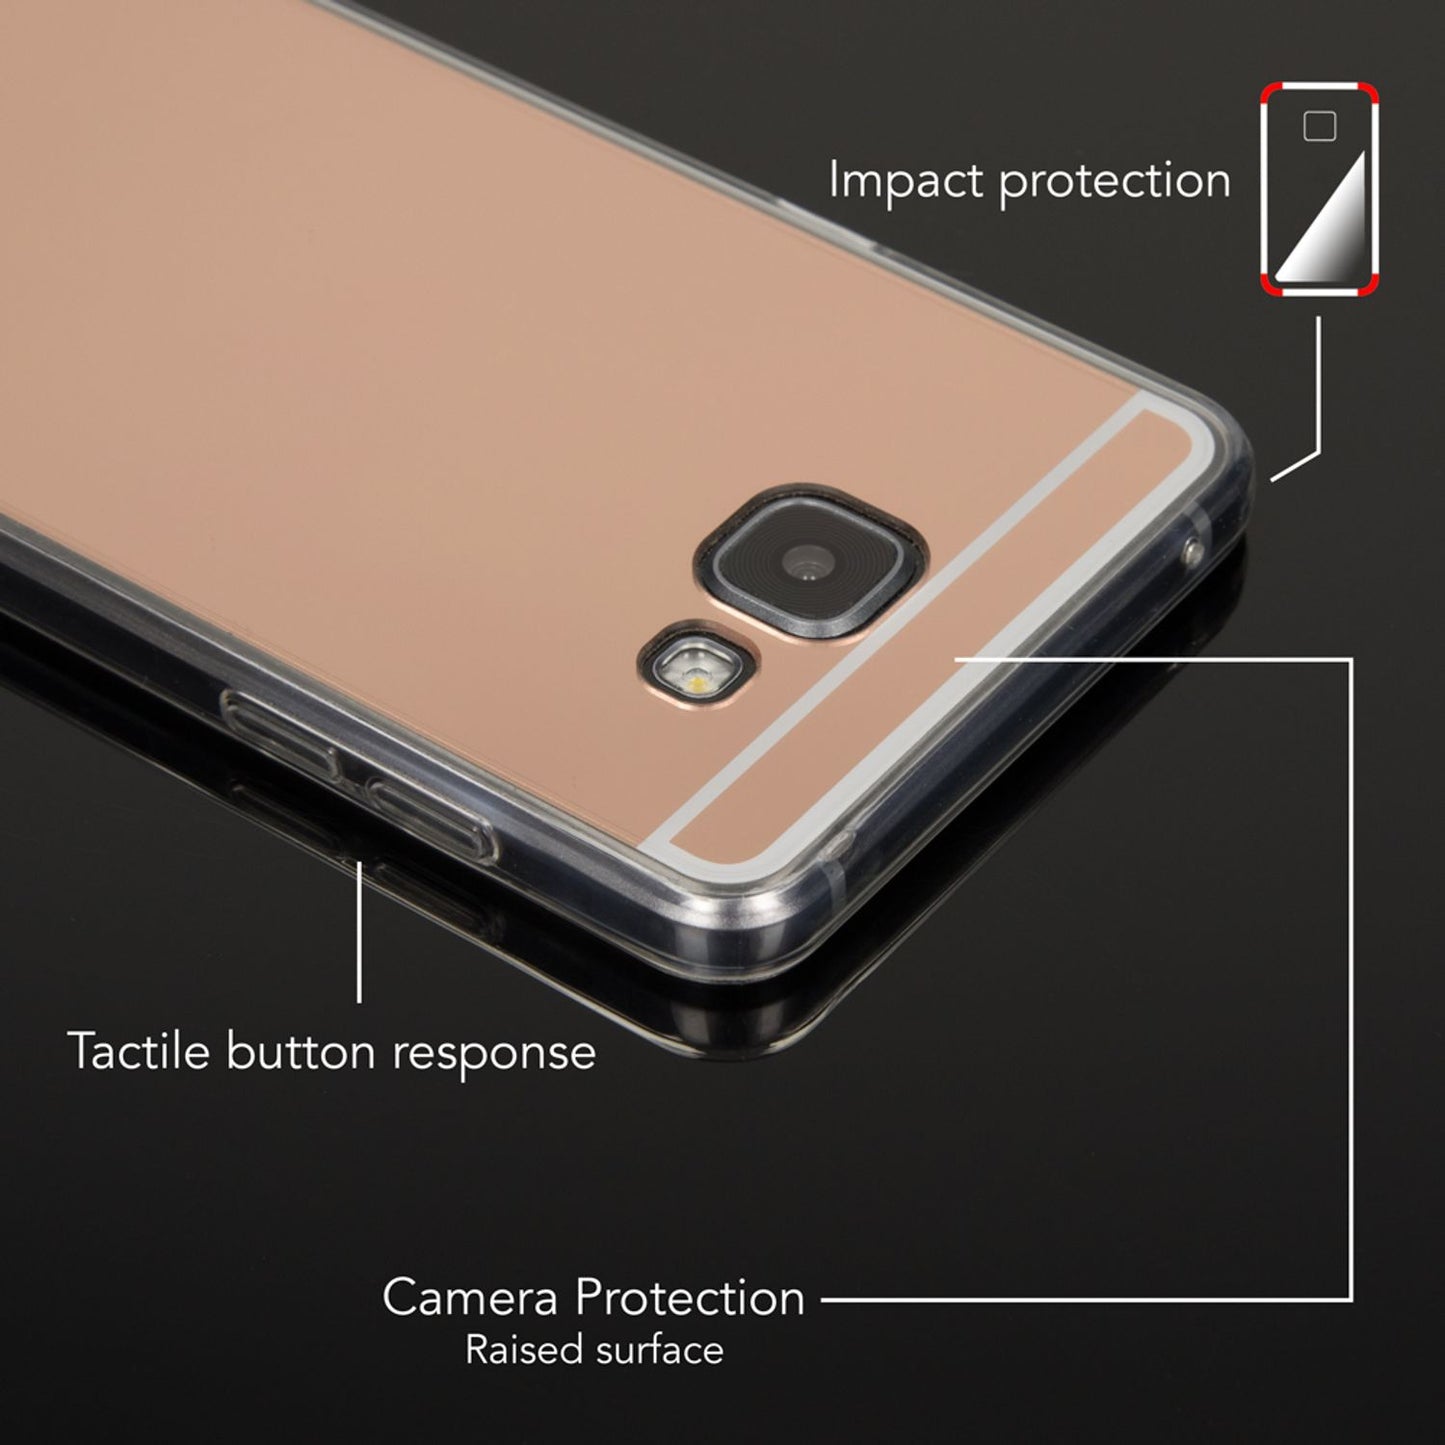 Samsung Galaxy A5 2016 Spiegel Handy Hülle von NALIA, Silikon Cover Case Schutz